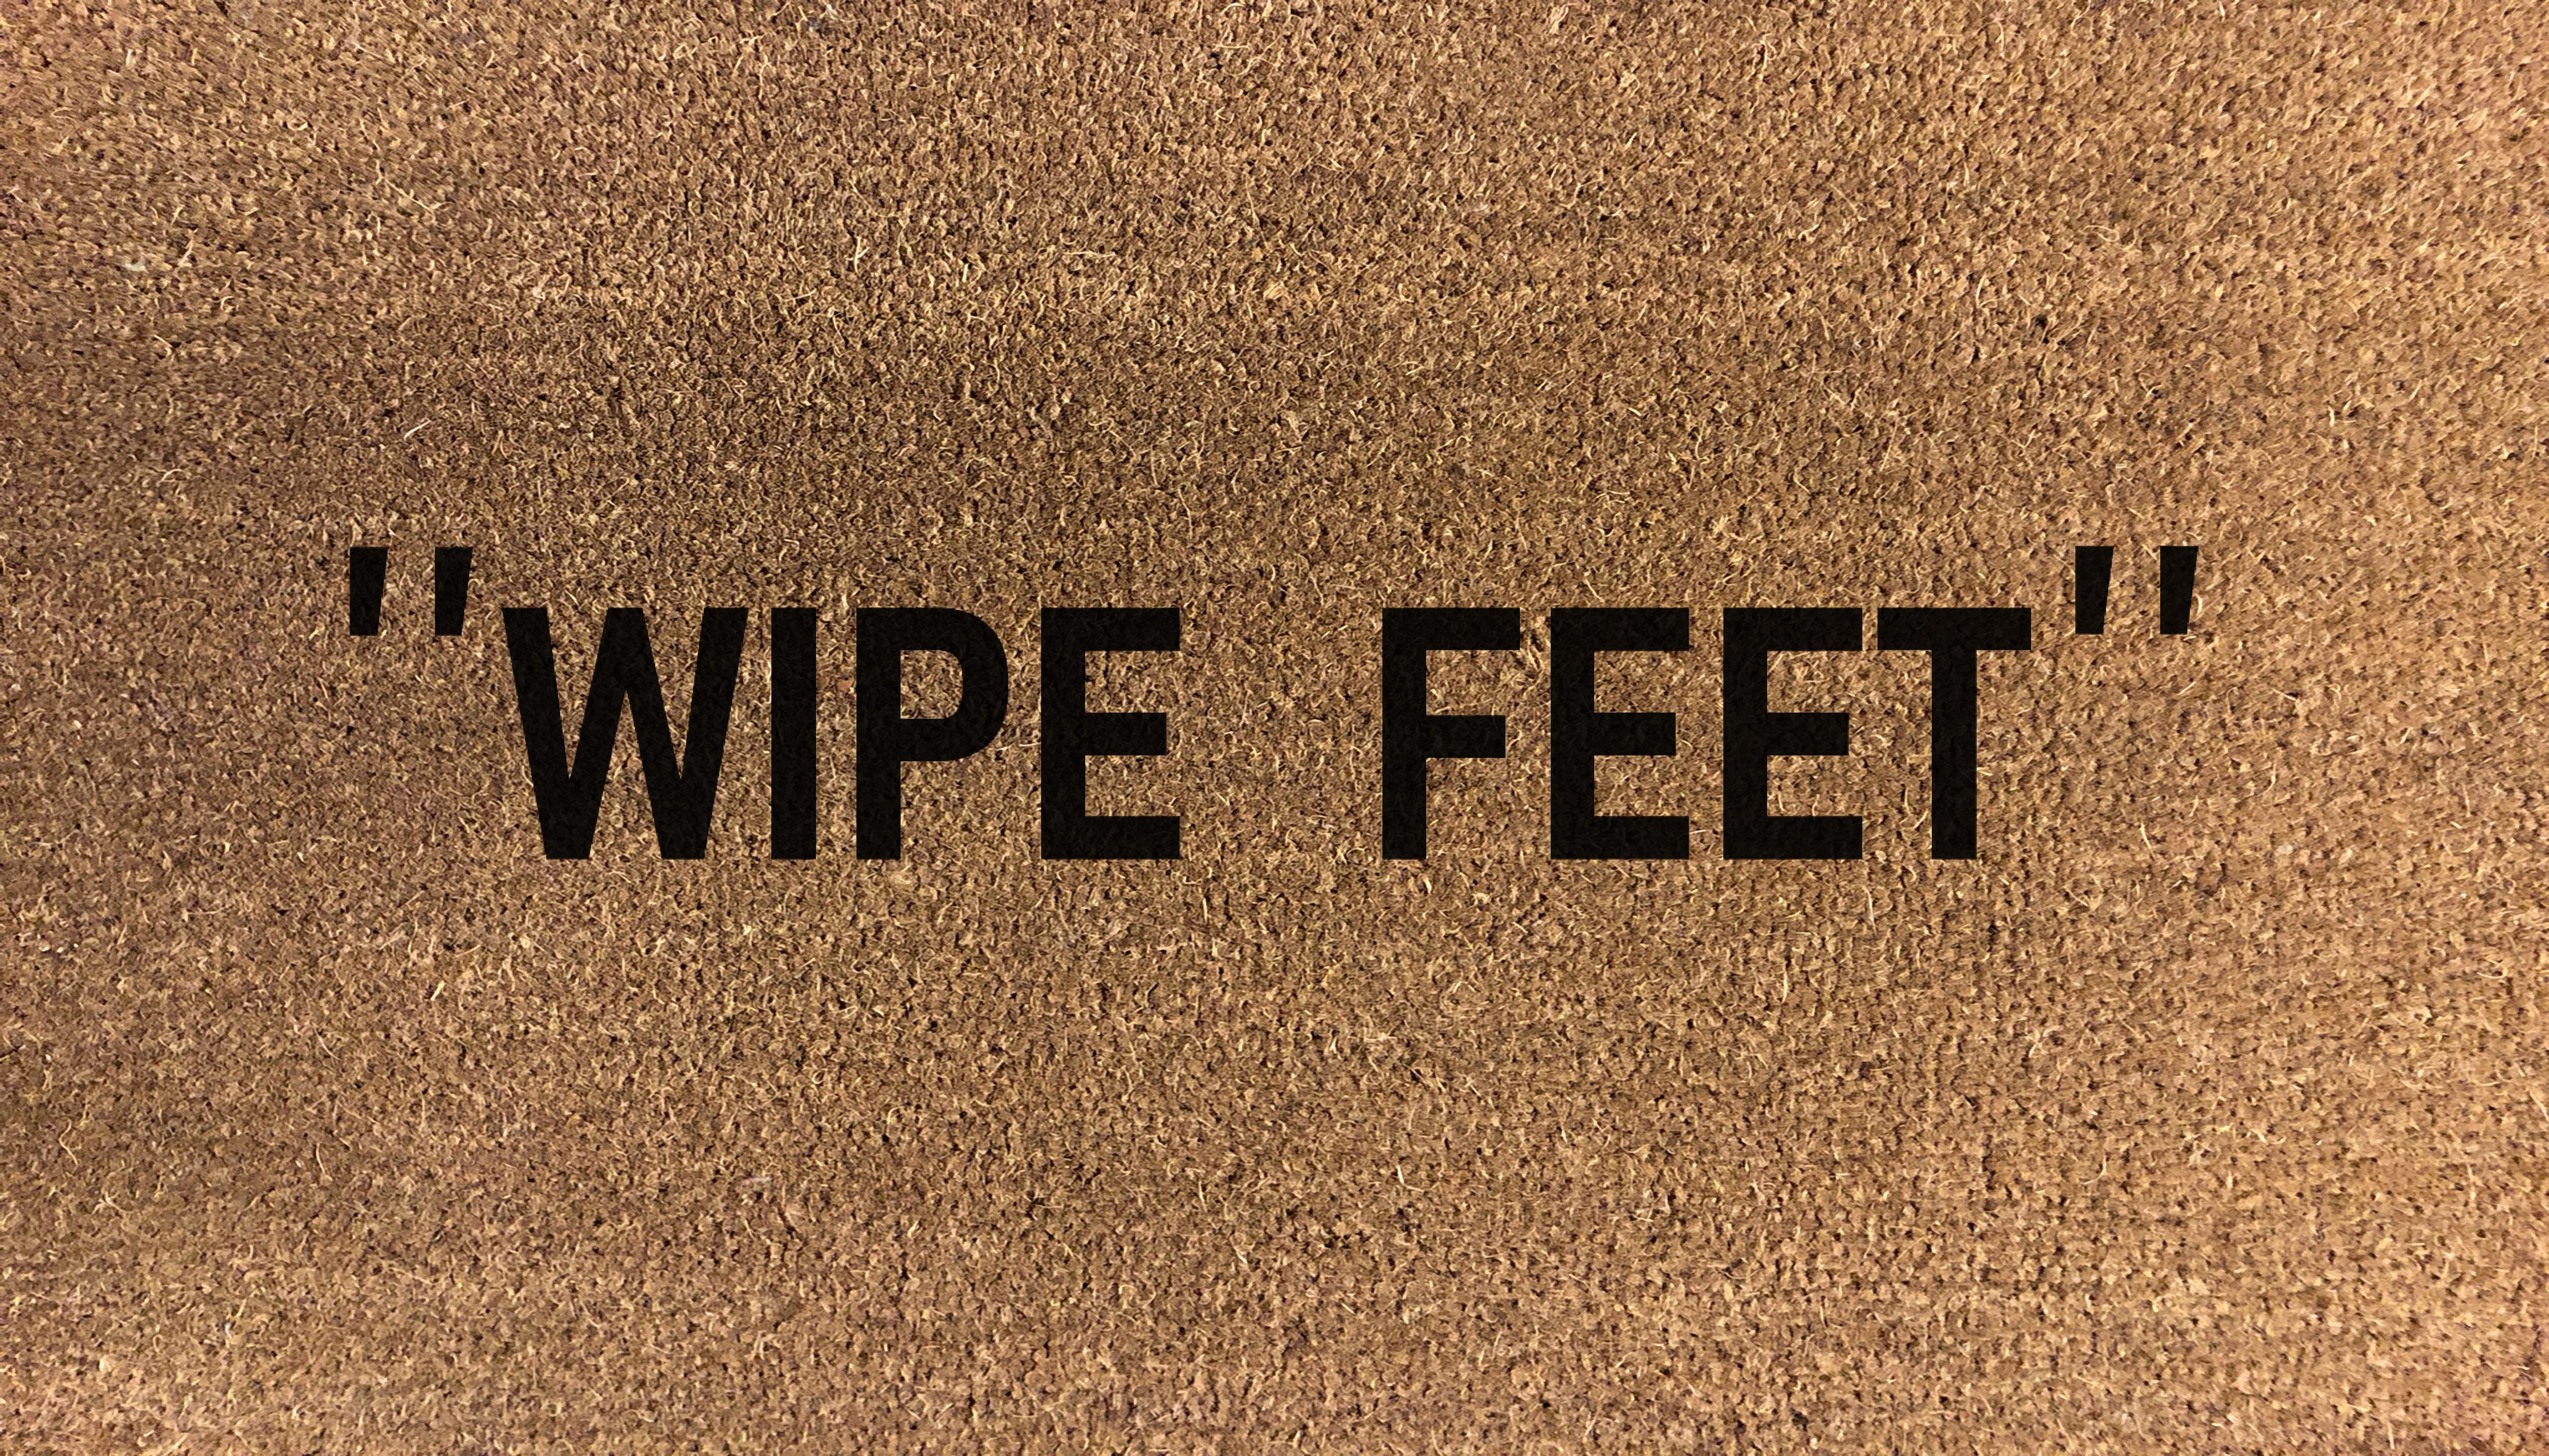 "Wipe Feet" Doormat